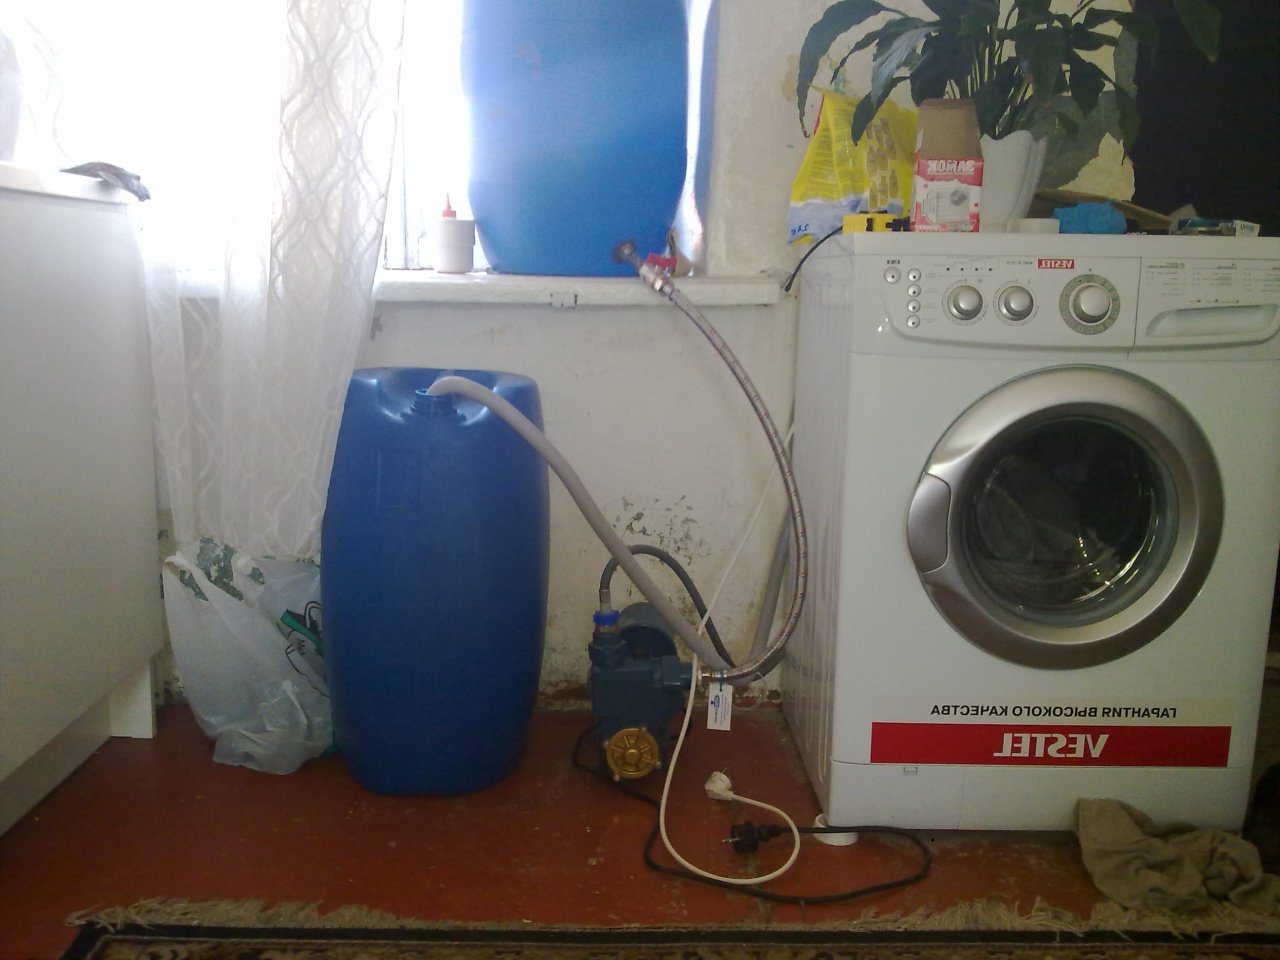 collegare una lavatrice senza acqua corrente